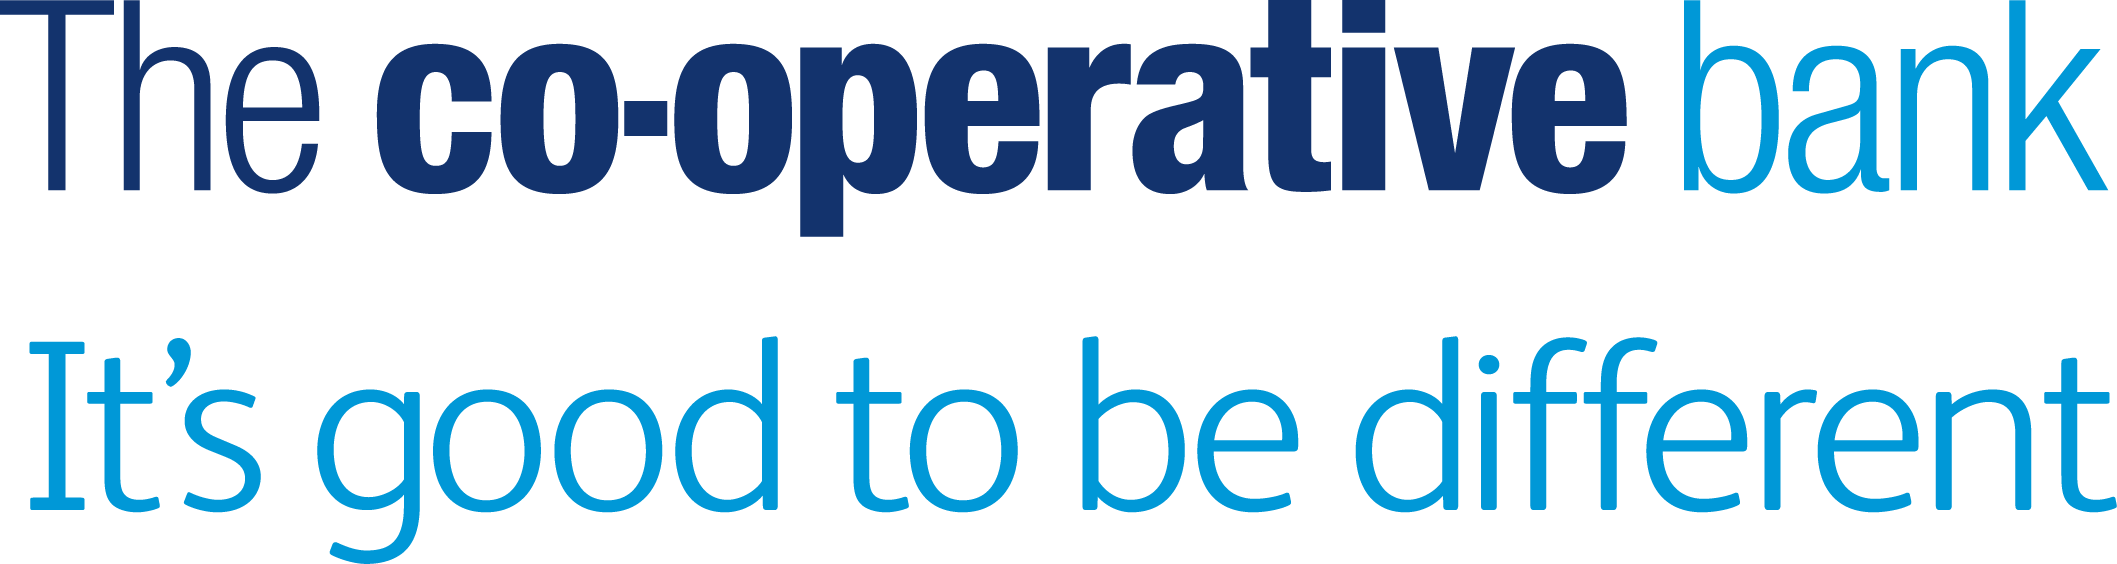 Co-op _Bank_Logo_RGB_